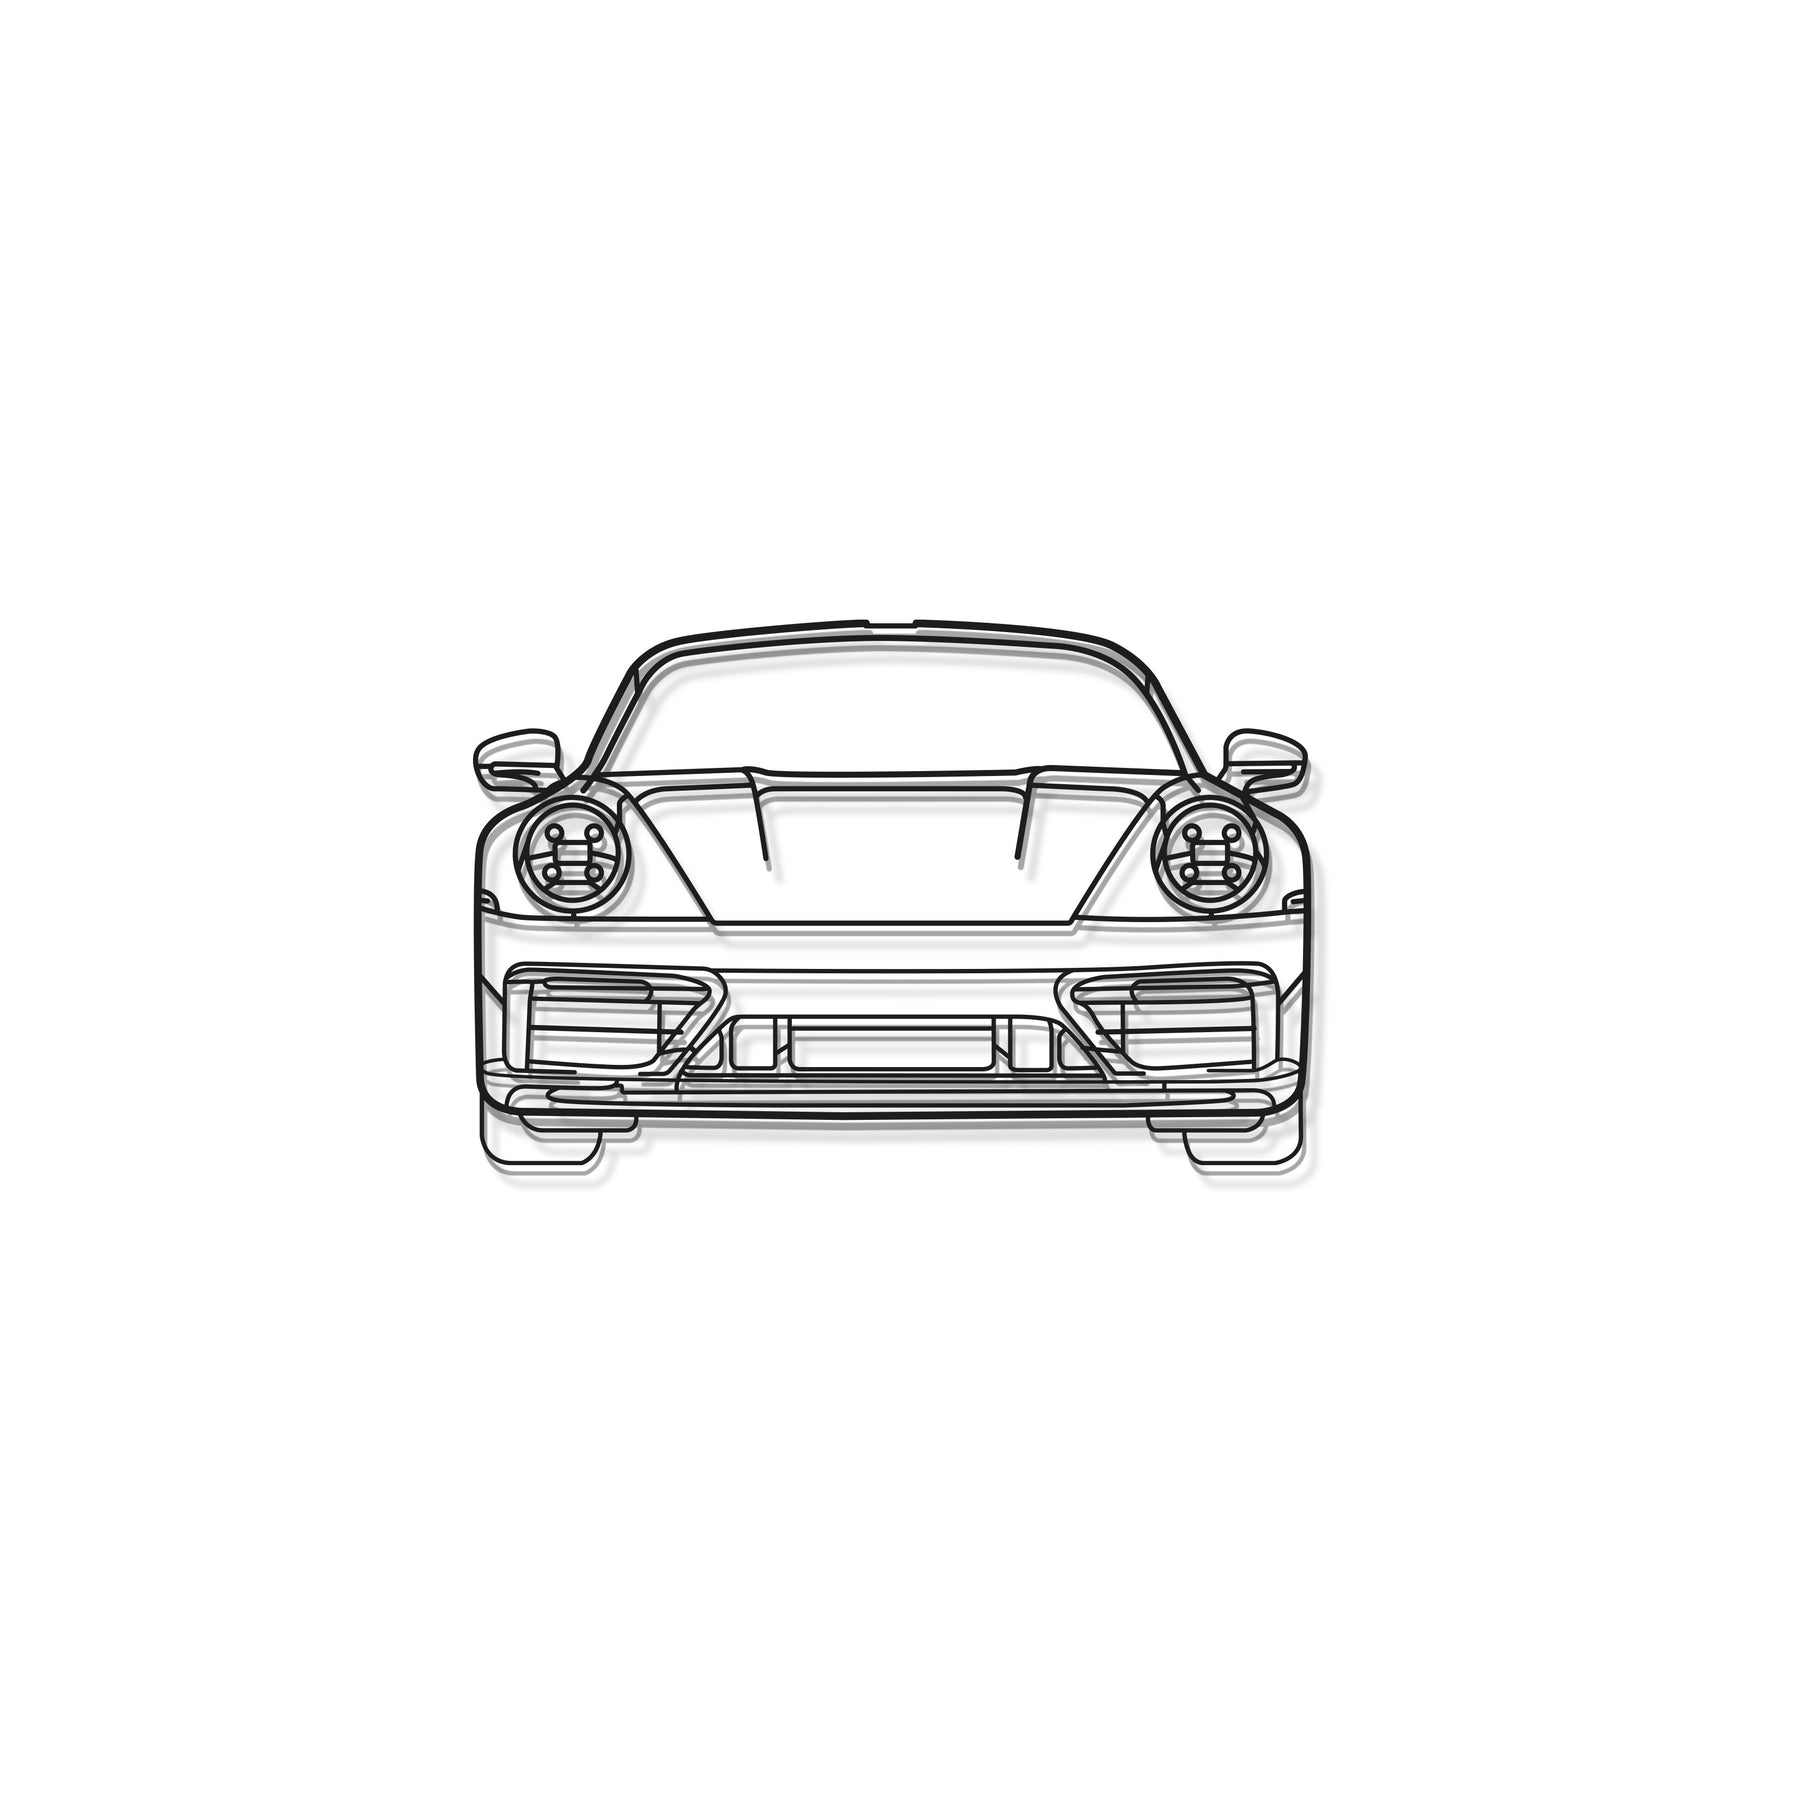 911 Model 992 Front View Metal Car Wall Art - MT0865